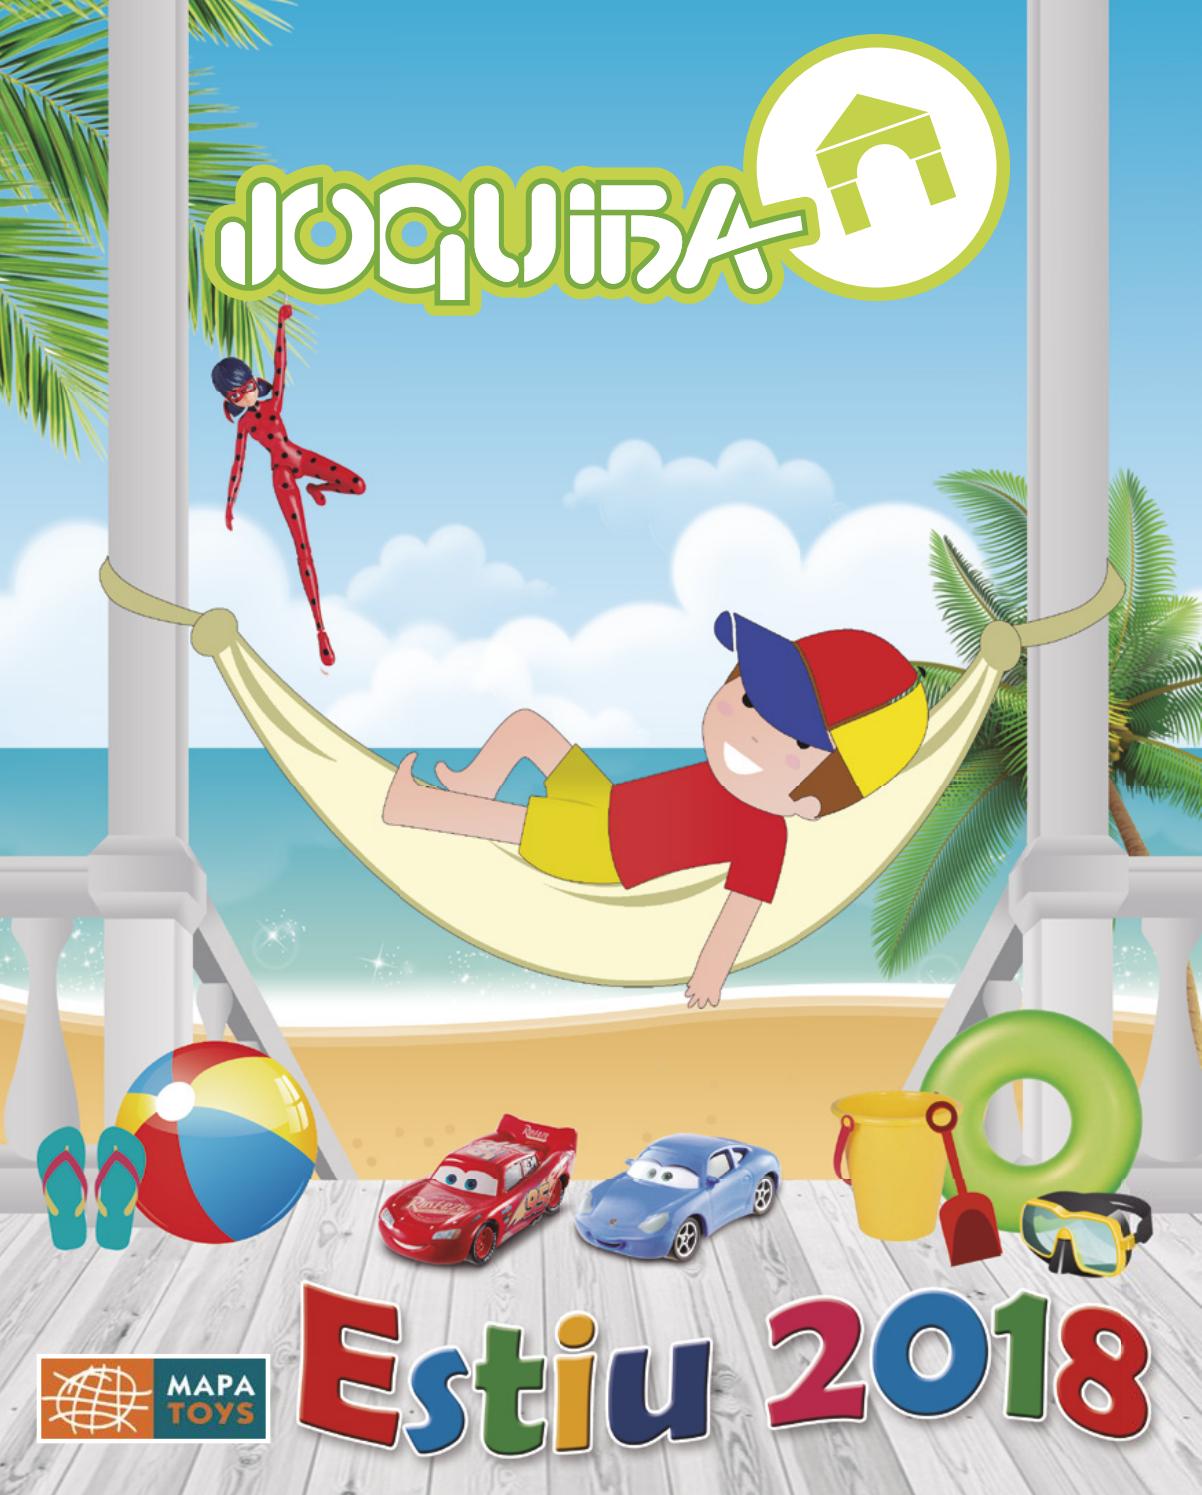 西班牙儿童玩具设计素材_书籍_画册_品牌怎么样_Joguiba2018